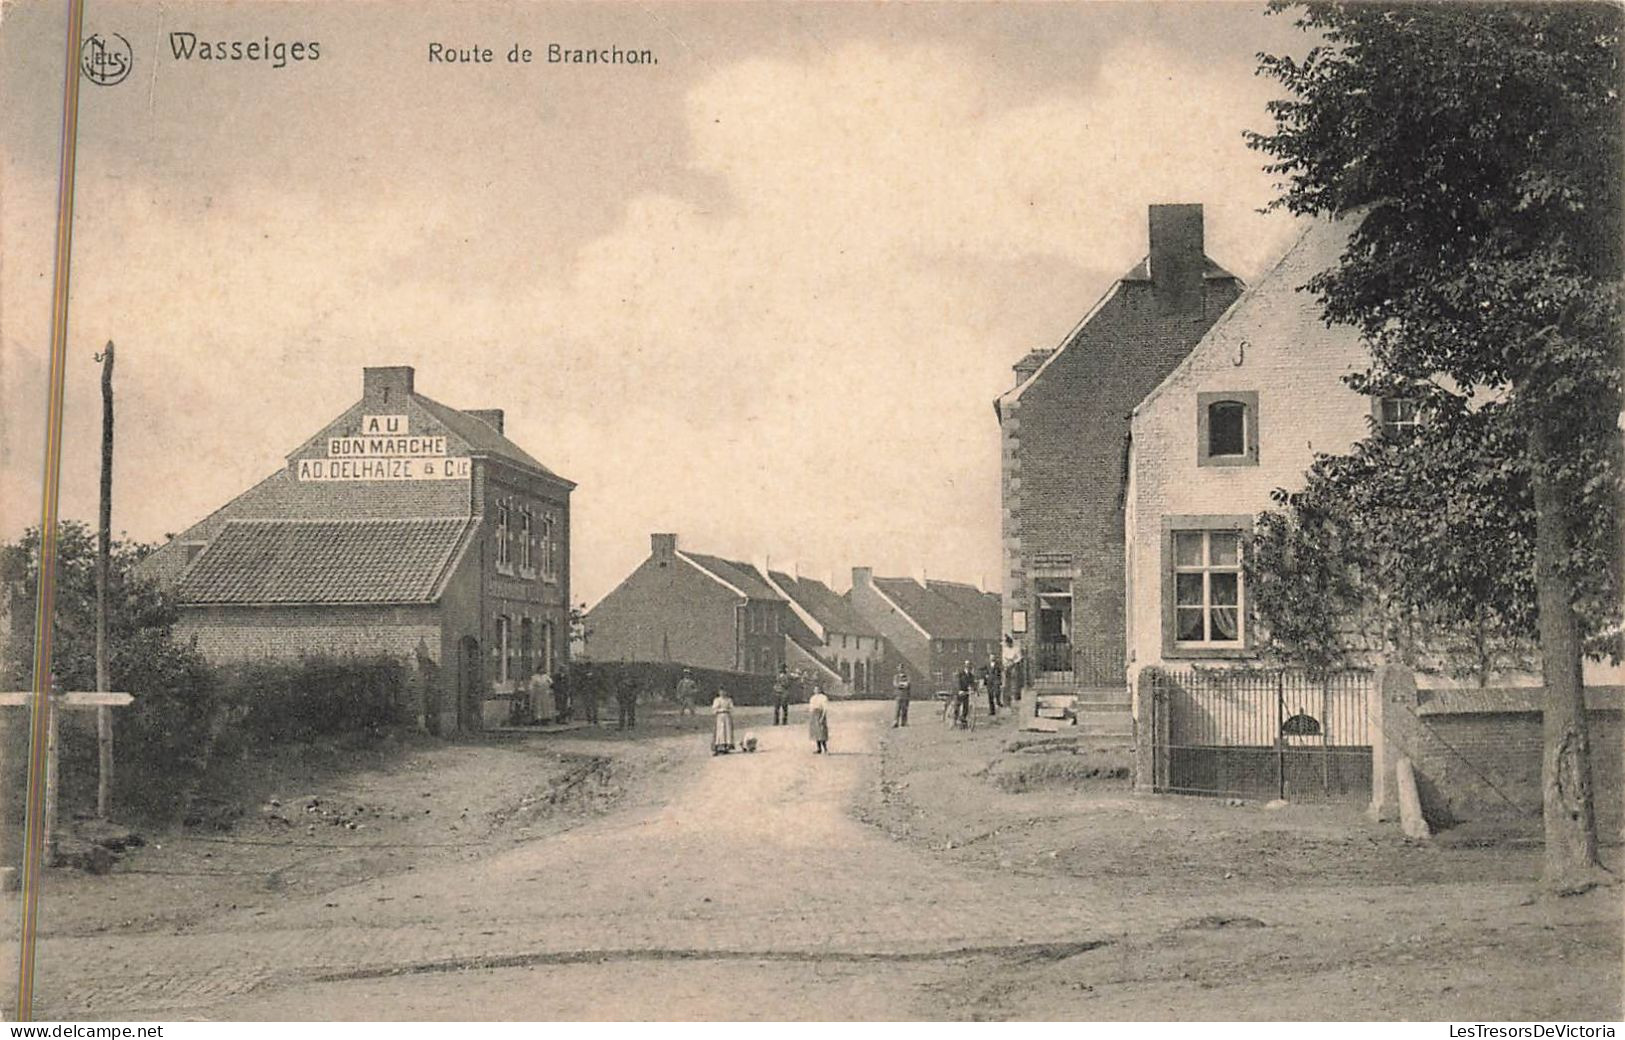 Belgique - Wasseiges - Route De Branchon - Edit. J. Léonard Pirson - AD. Delhaize & Cie -  Carte Postale Ancienne - Waremme